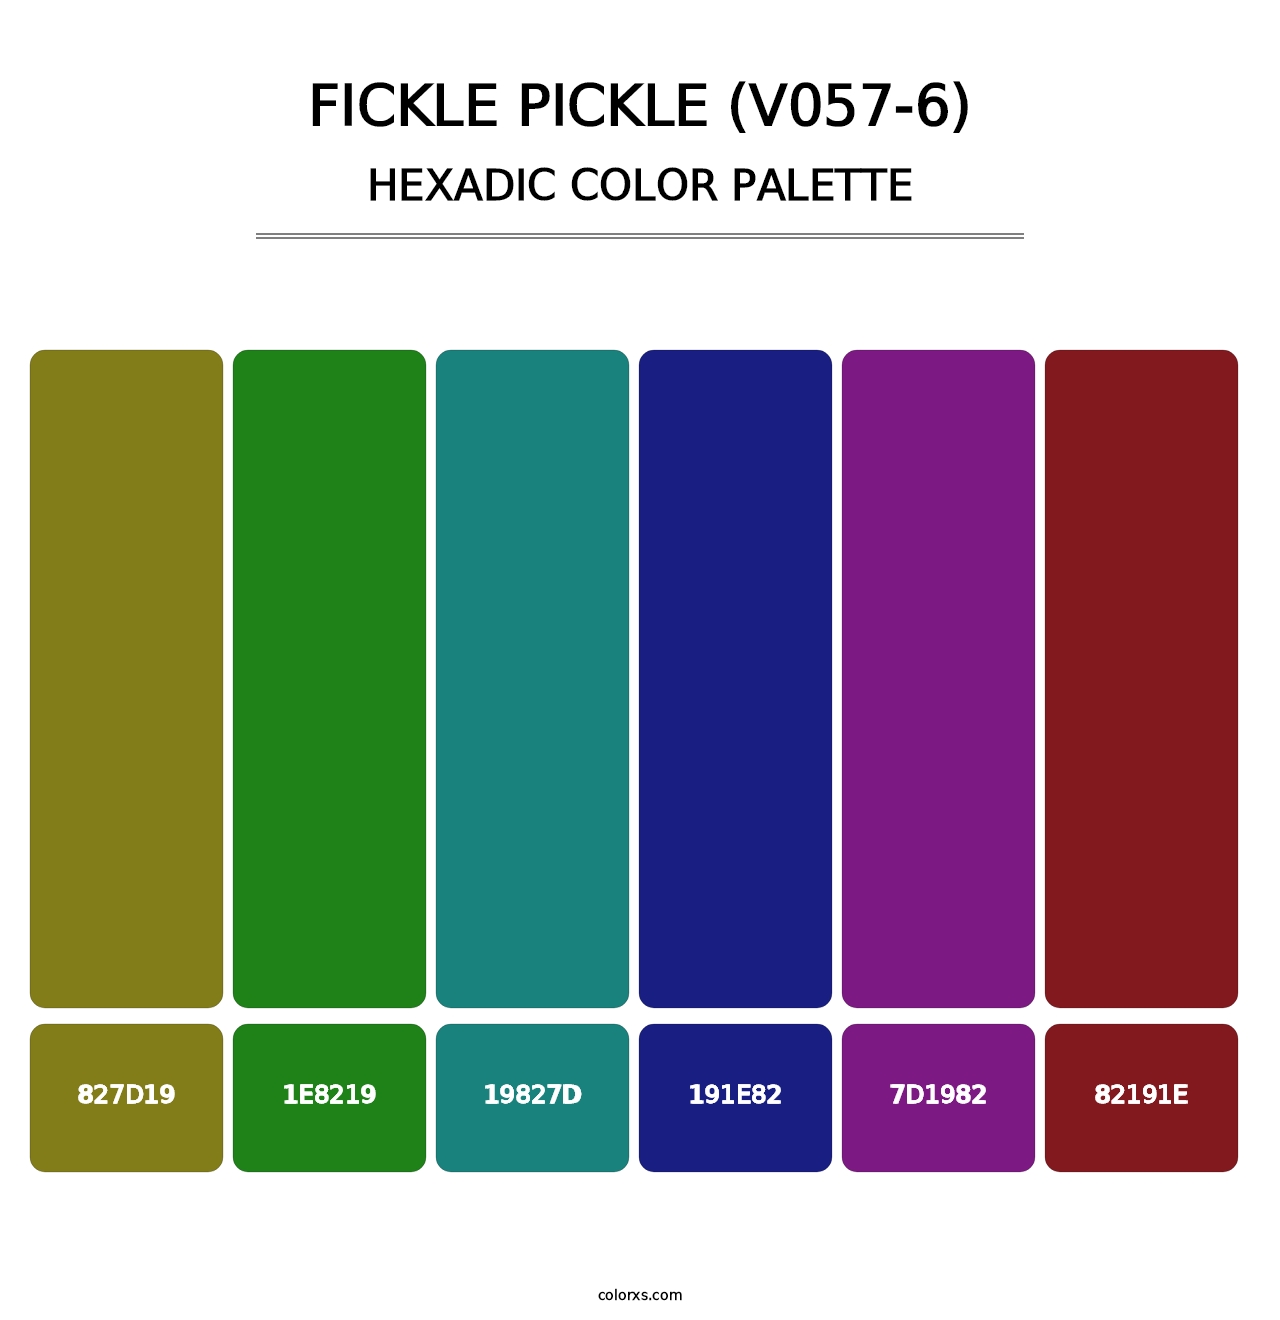 Fickle Pickle (V057-6) - Hexadic Color Palette